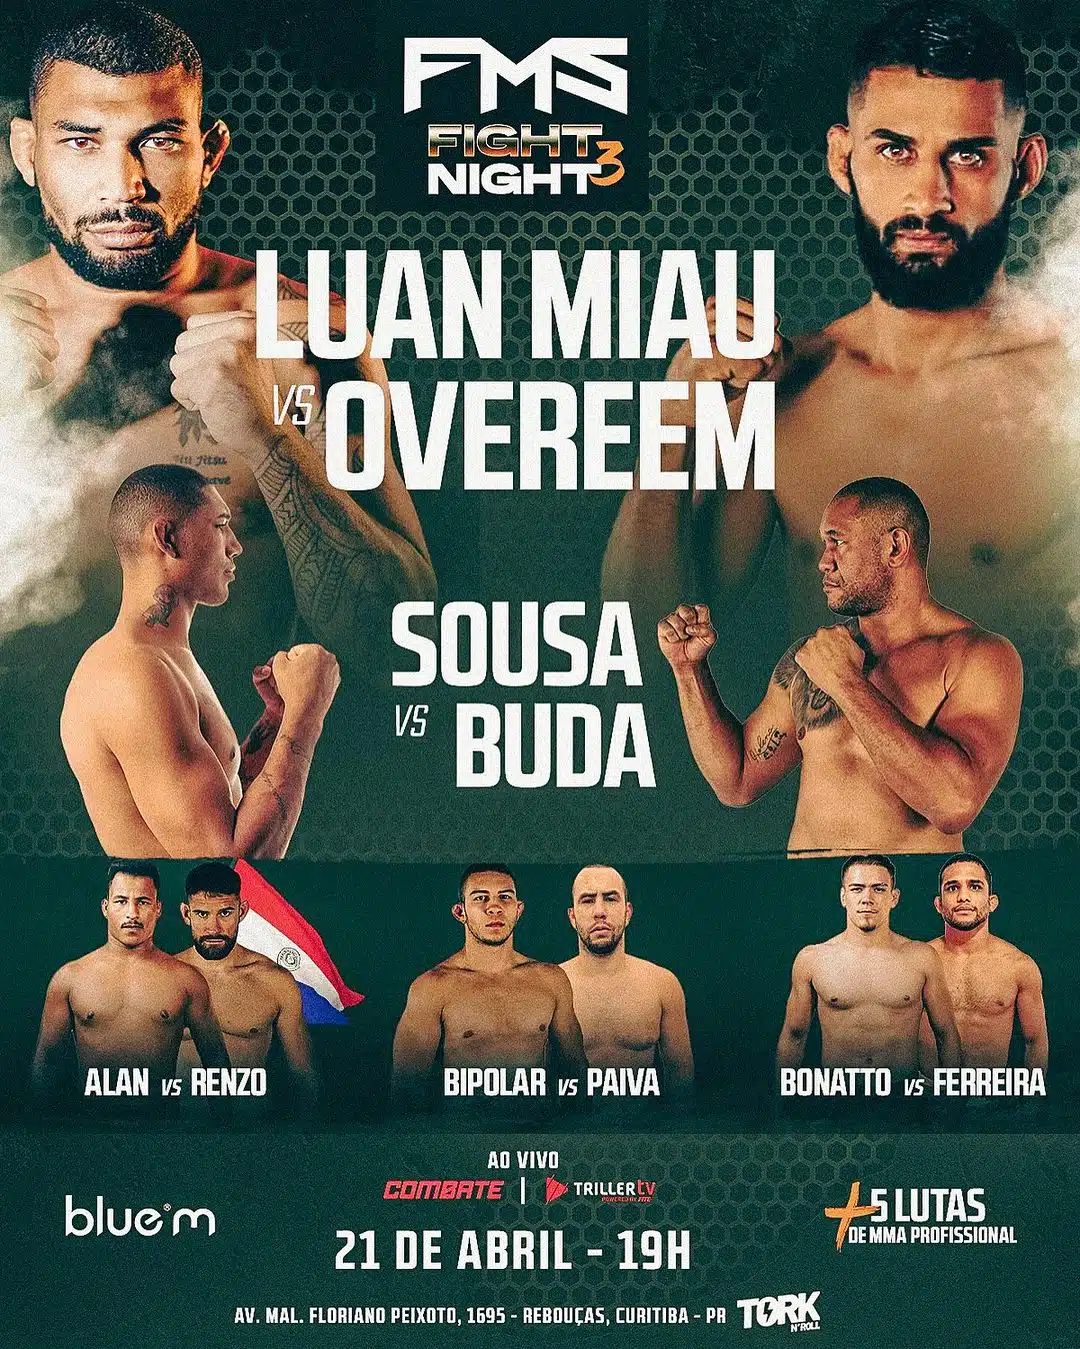 FMS Fight Night 3 promete uma noite de lutas intensas de MMA em Curitiba (PR)